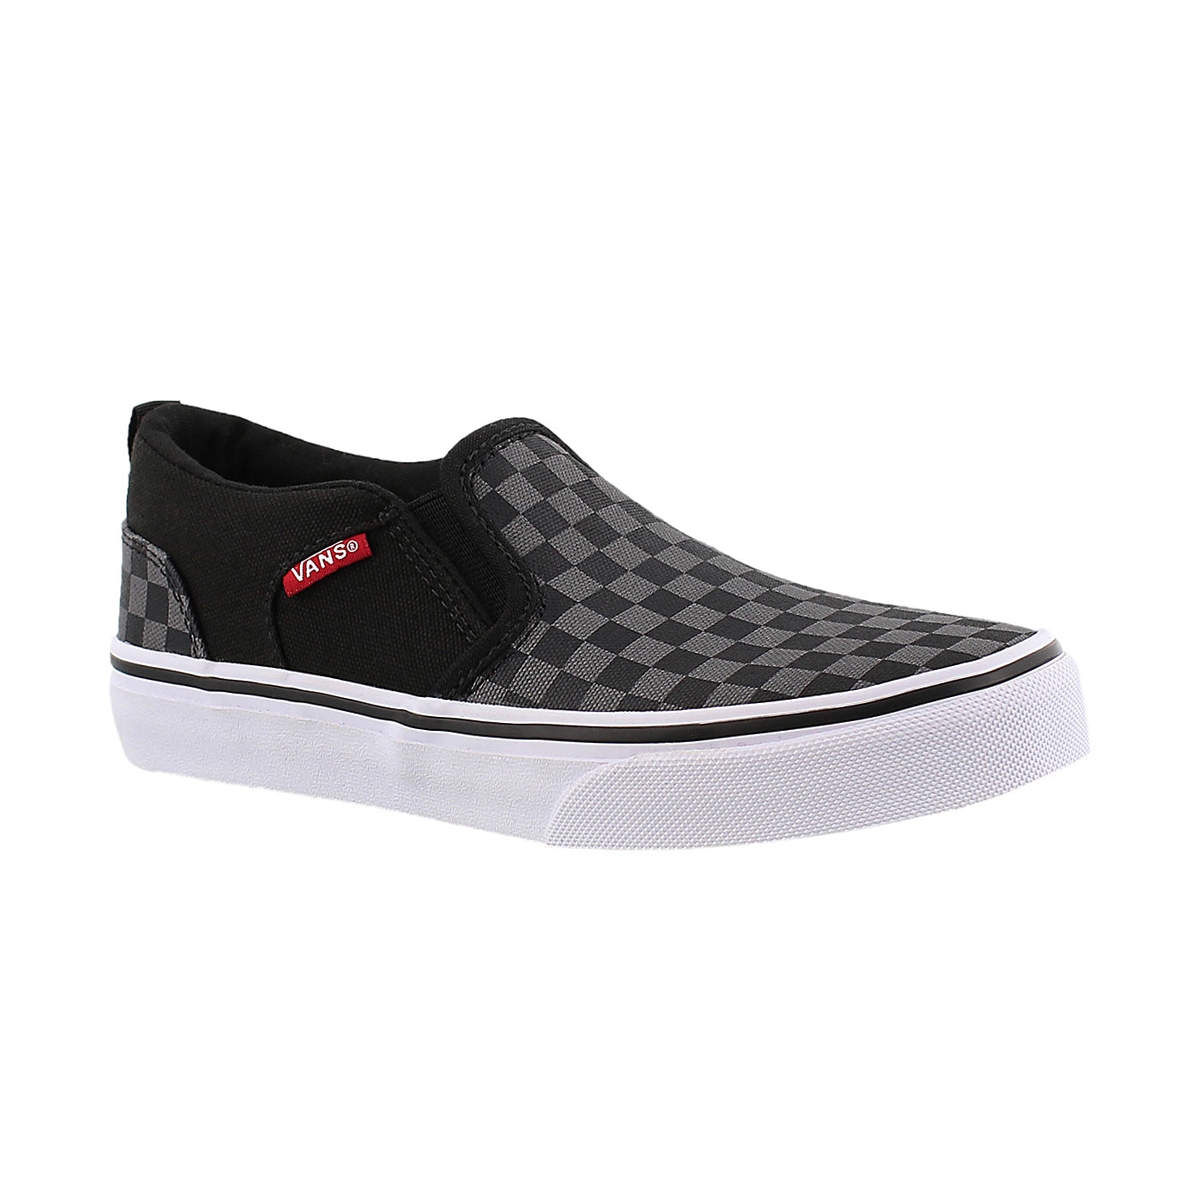 Vans' Boys' Asher Checkered Slip On Sneaker